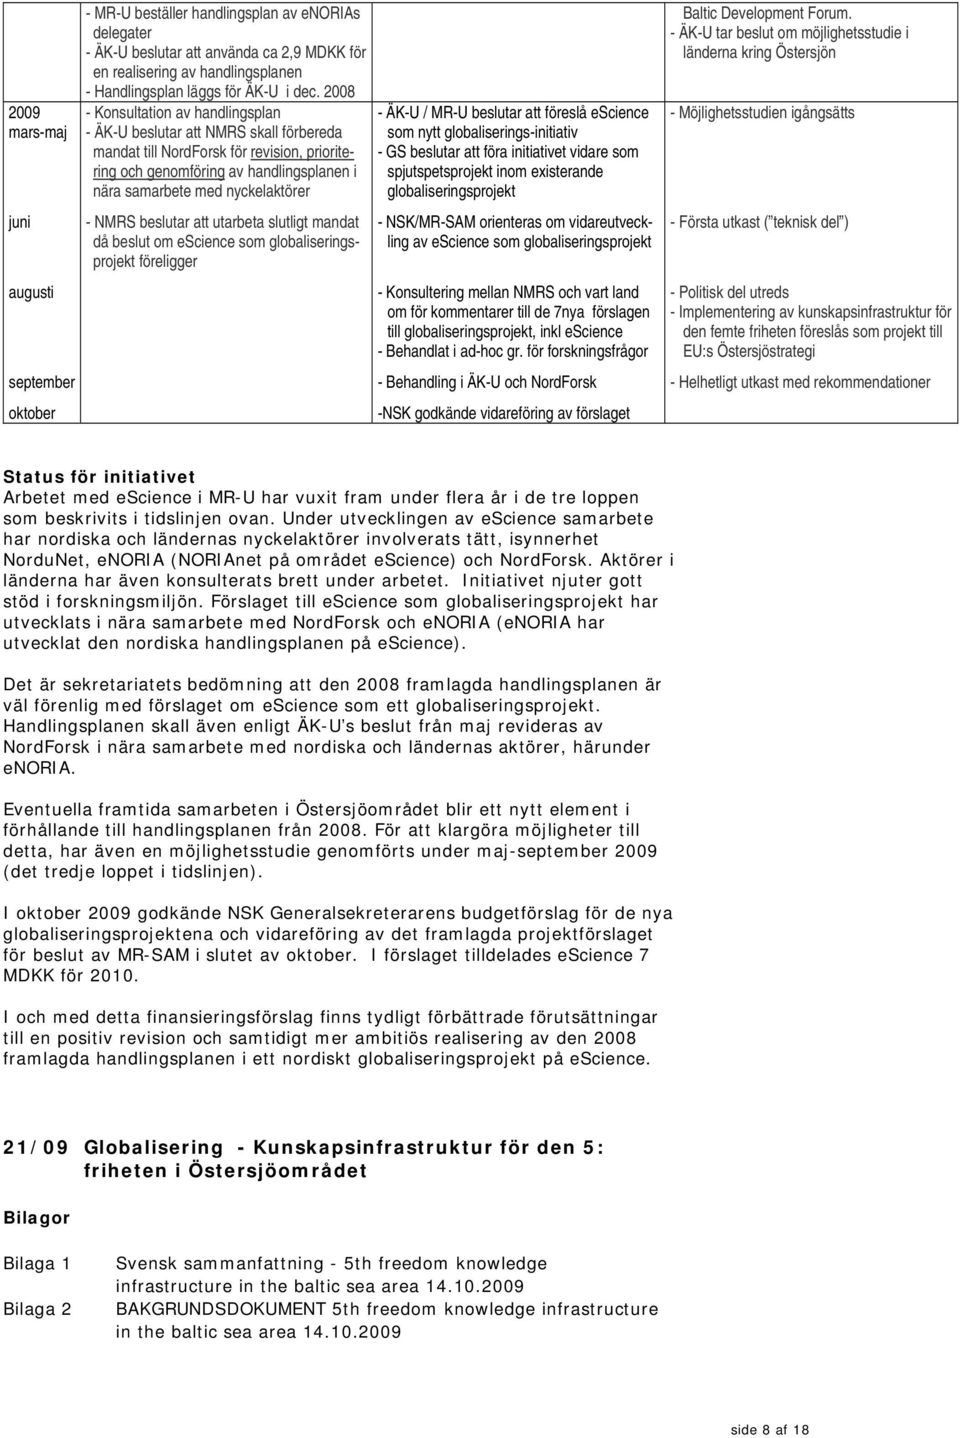 2008 - Konsultation av handlingsplan - ÄK-U beslutar att NMRS skall förbereda mandat till NordForsk för revision, prioritering och genomföring av handlingsplanen i nära samarbete med nyckelaktörer -